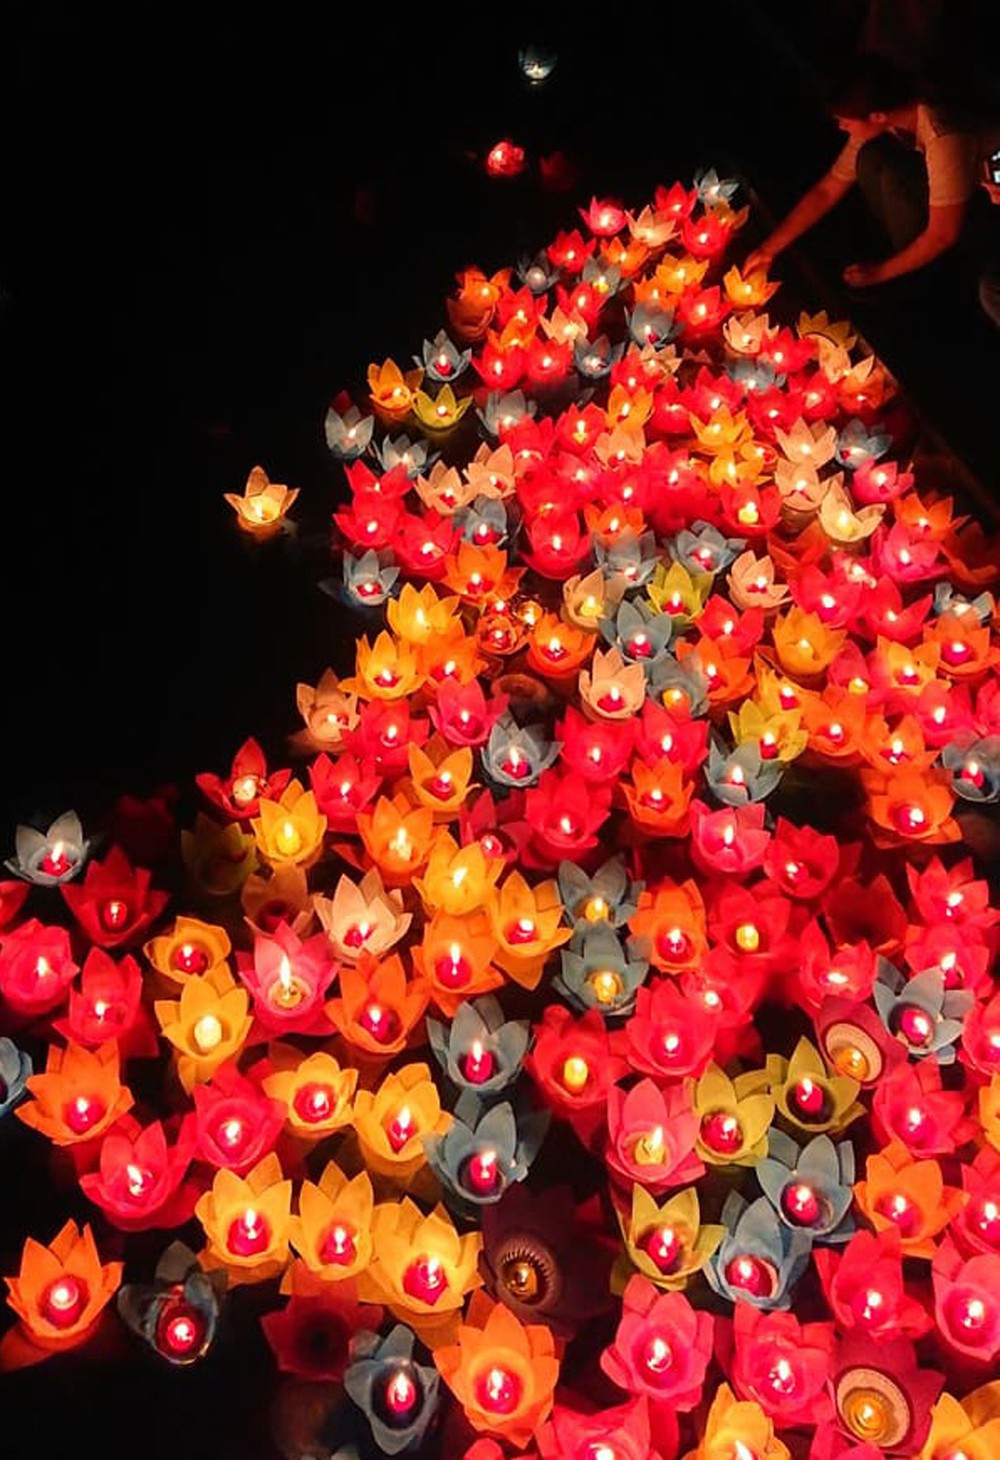 Lung linh đêm hội hoa đăng cầu cho thế giới hòa bình tại Đại lễ Phật Đản Vesak 2019 - Ảnh 13.